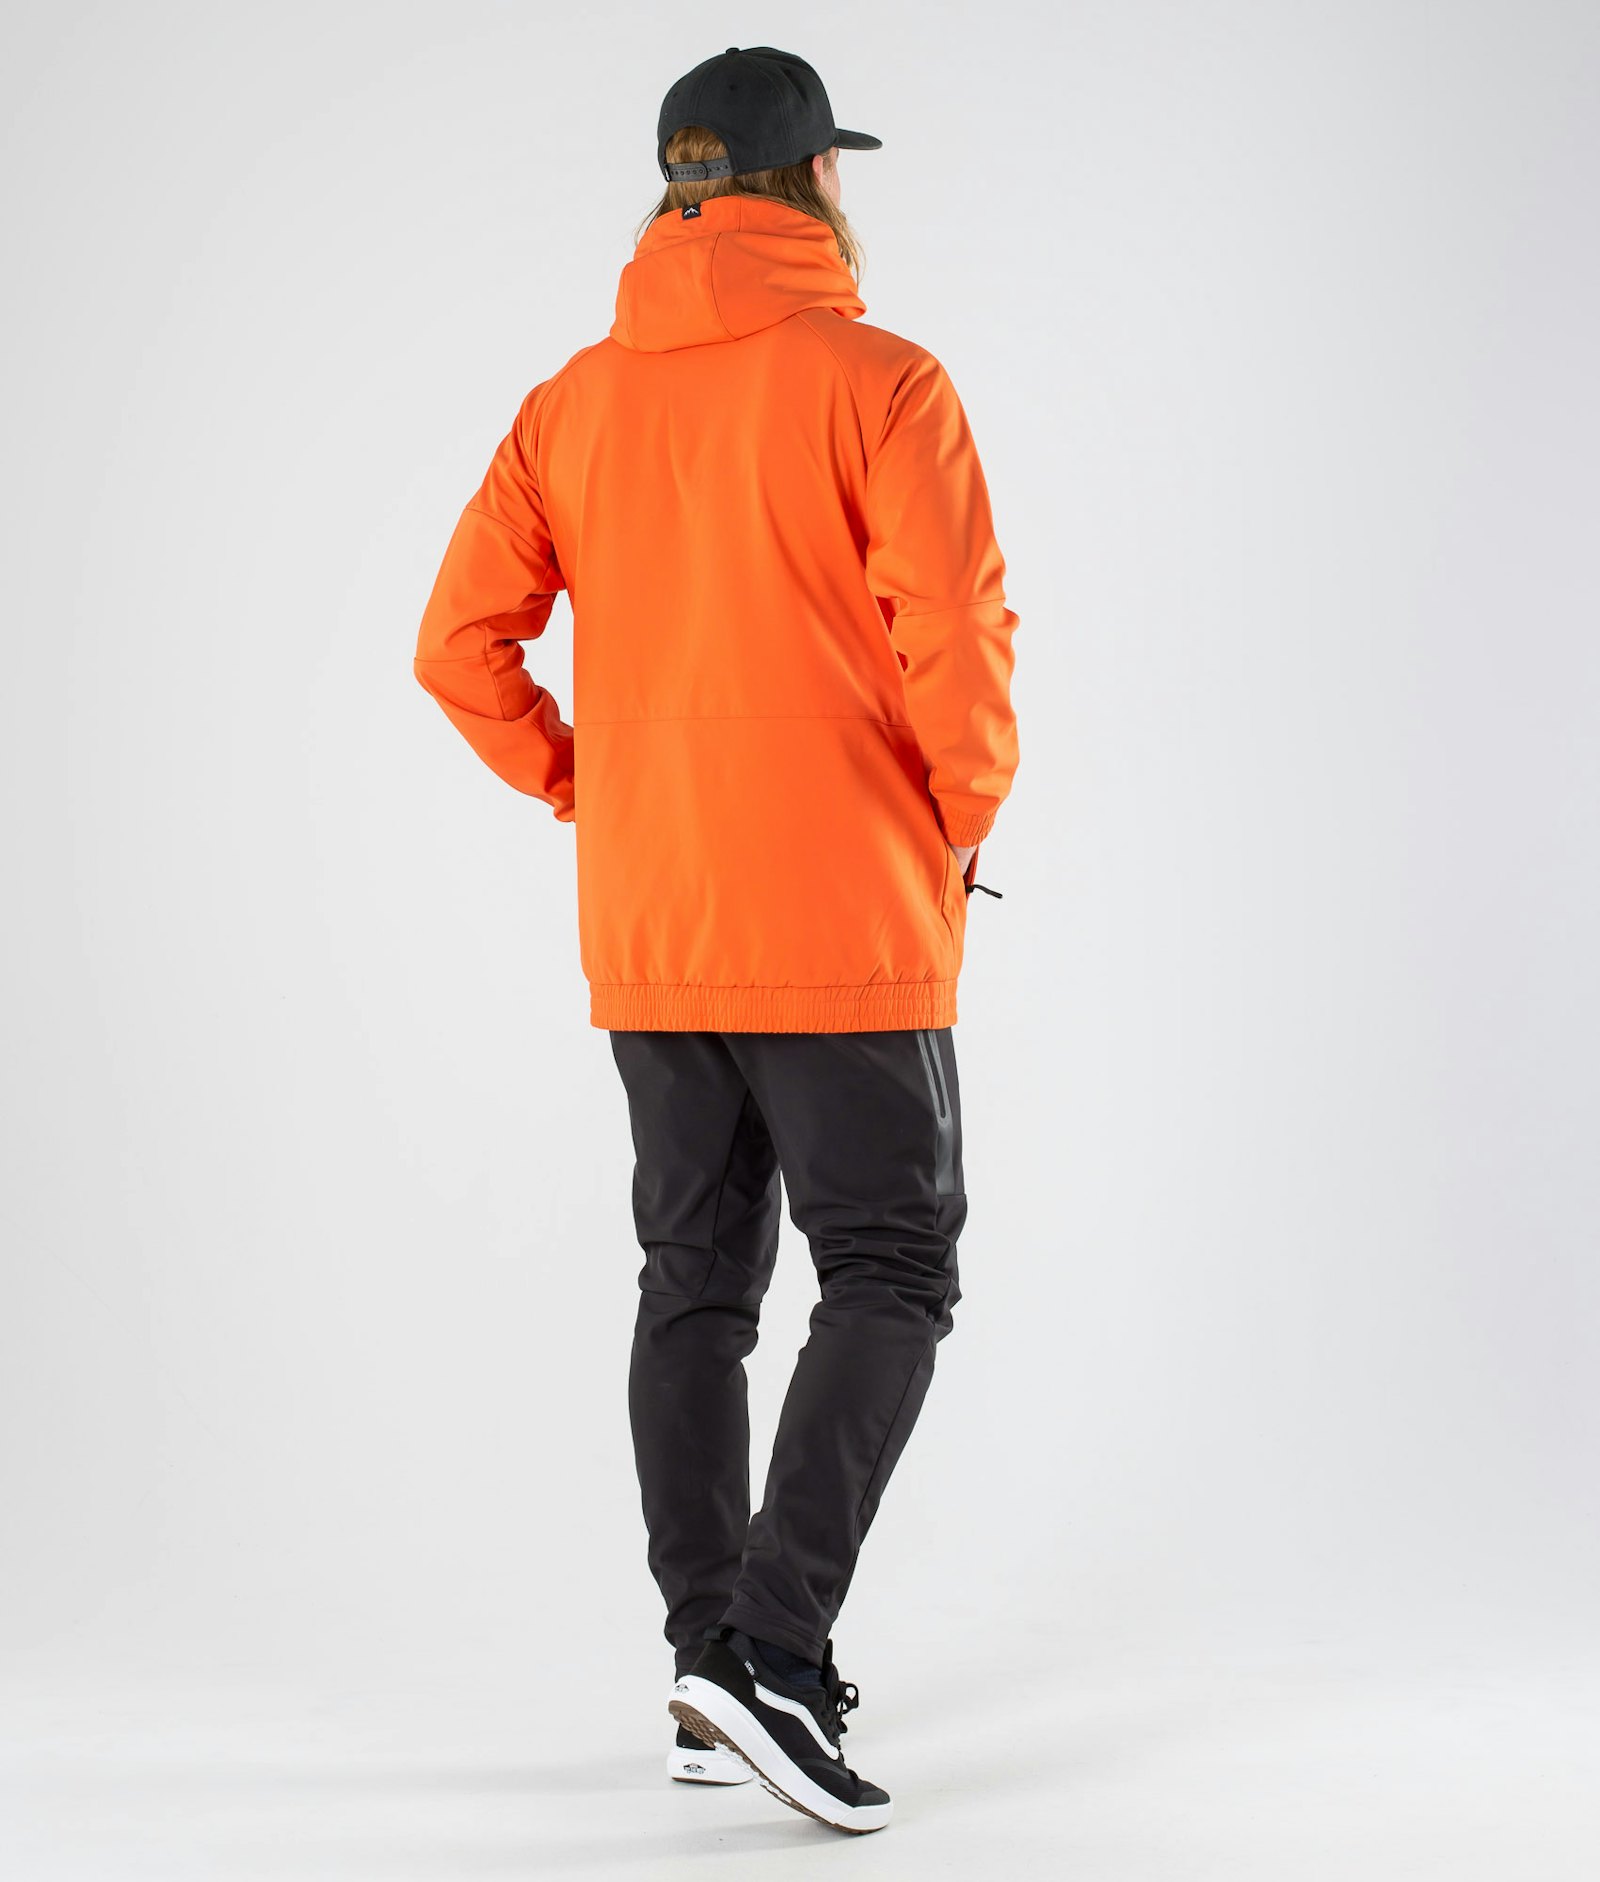 Rambler Outdoor Jacket Men Orange, Image 7 of 7